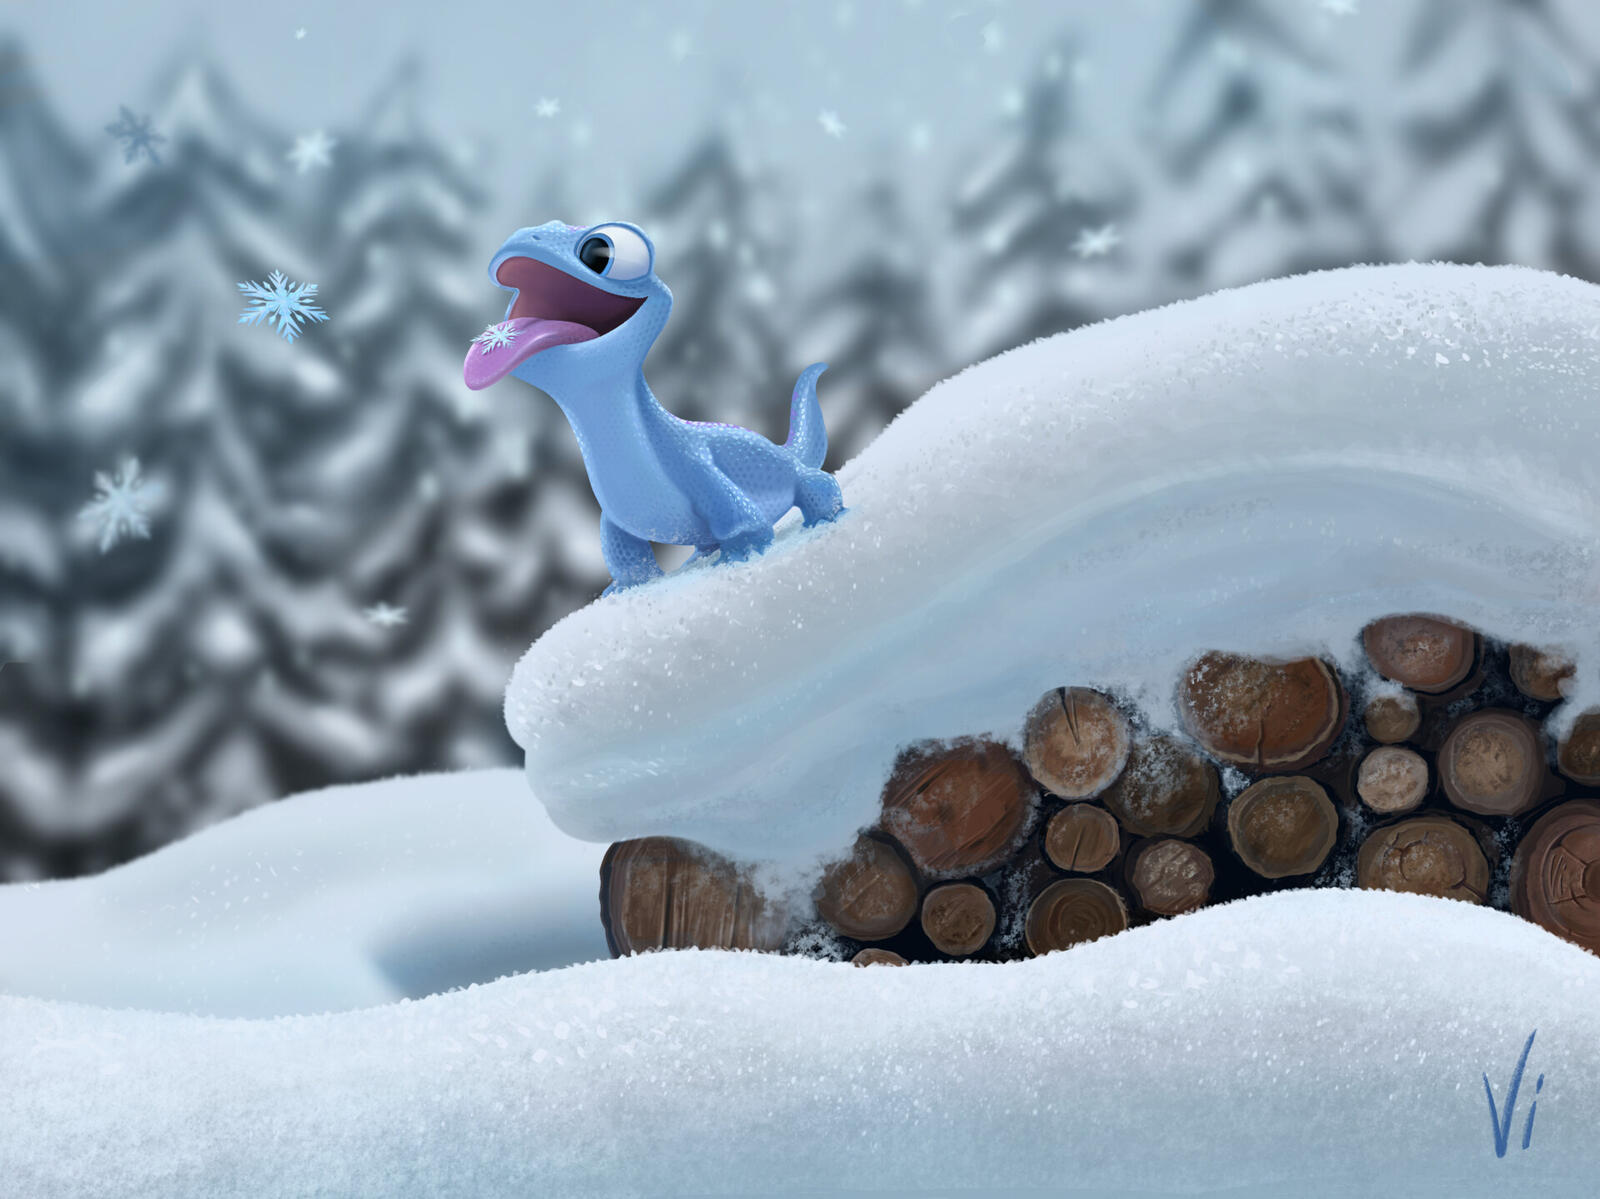 Озорной Бруни из мультфильма Холодное сердце 2 ловит снежинки